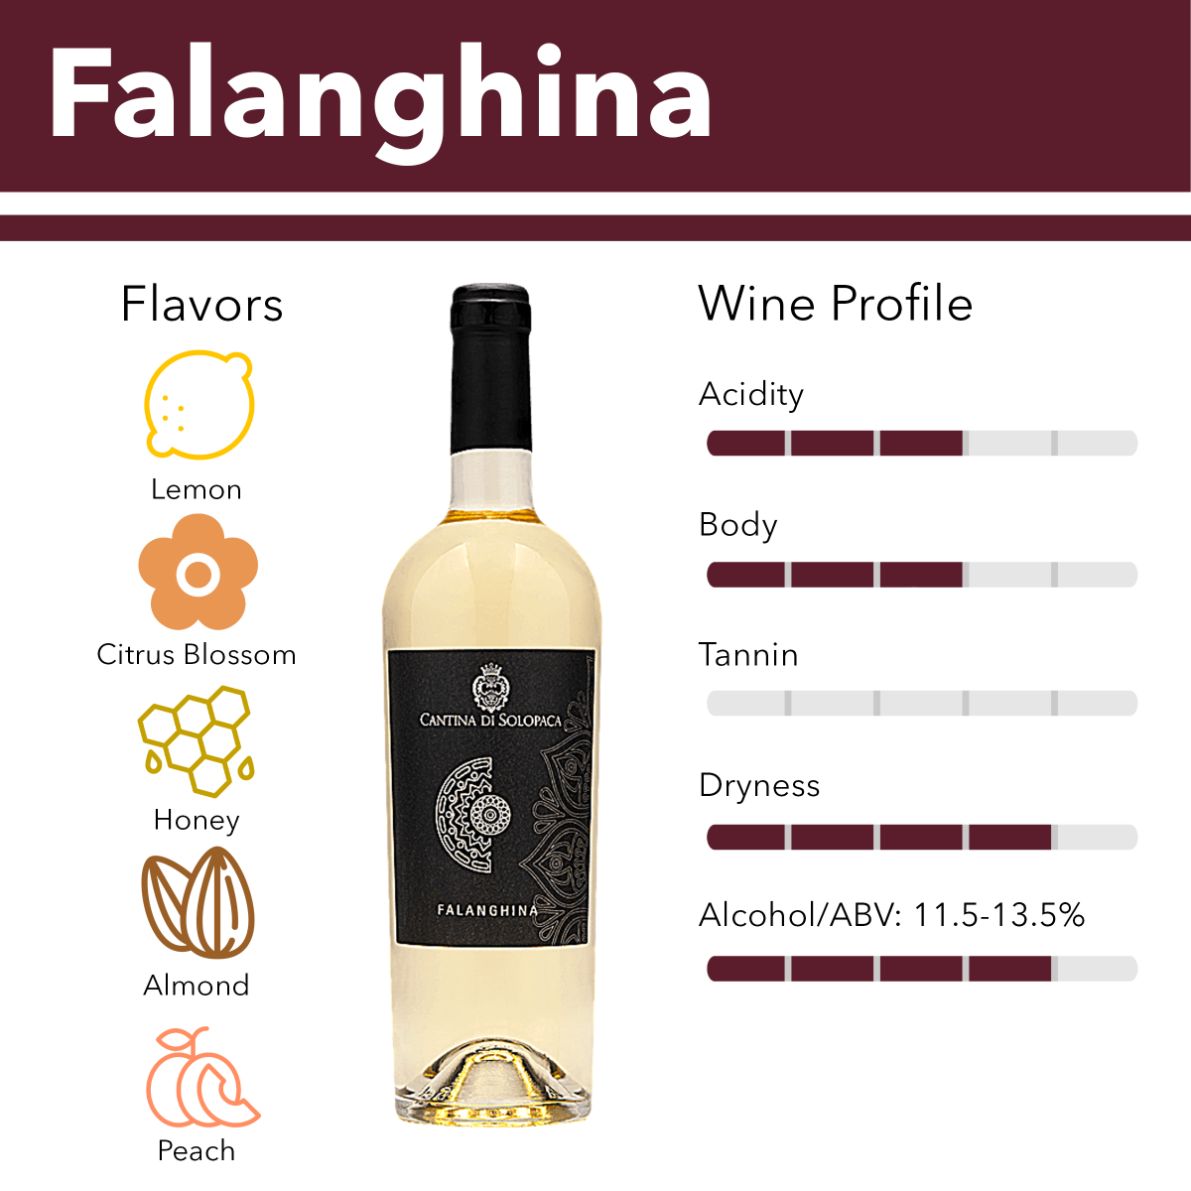 Falanghina wine flavor profile